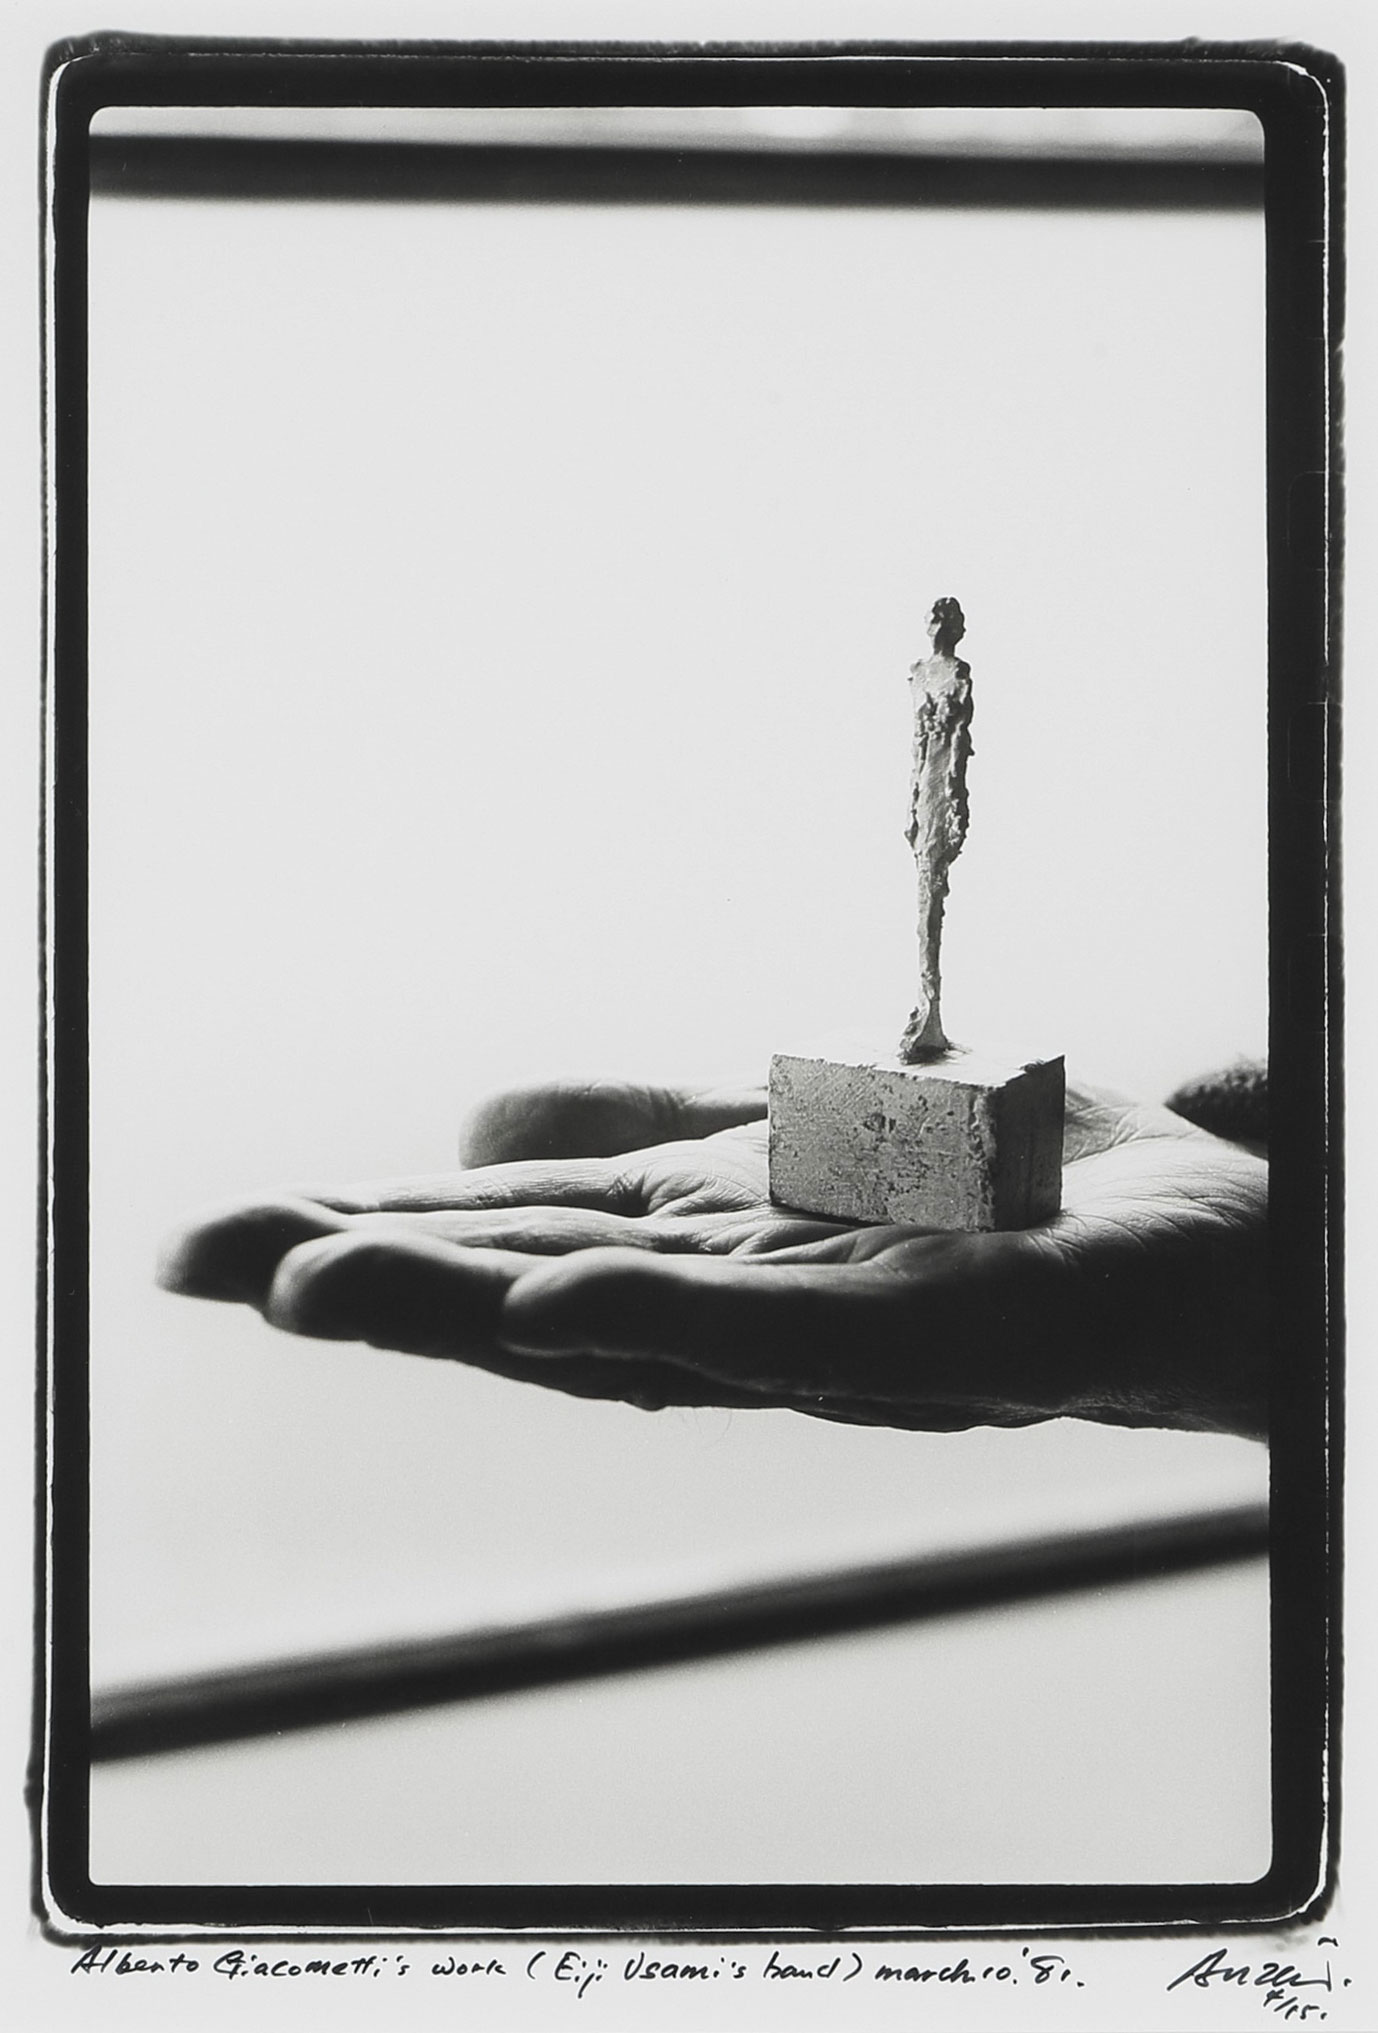 写真:安齊重男「宇佐見英治の手の上のアルベルト・ジャコメッティ」1981年